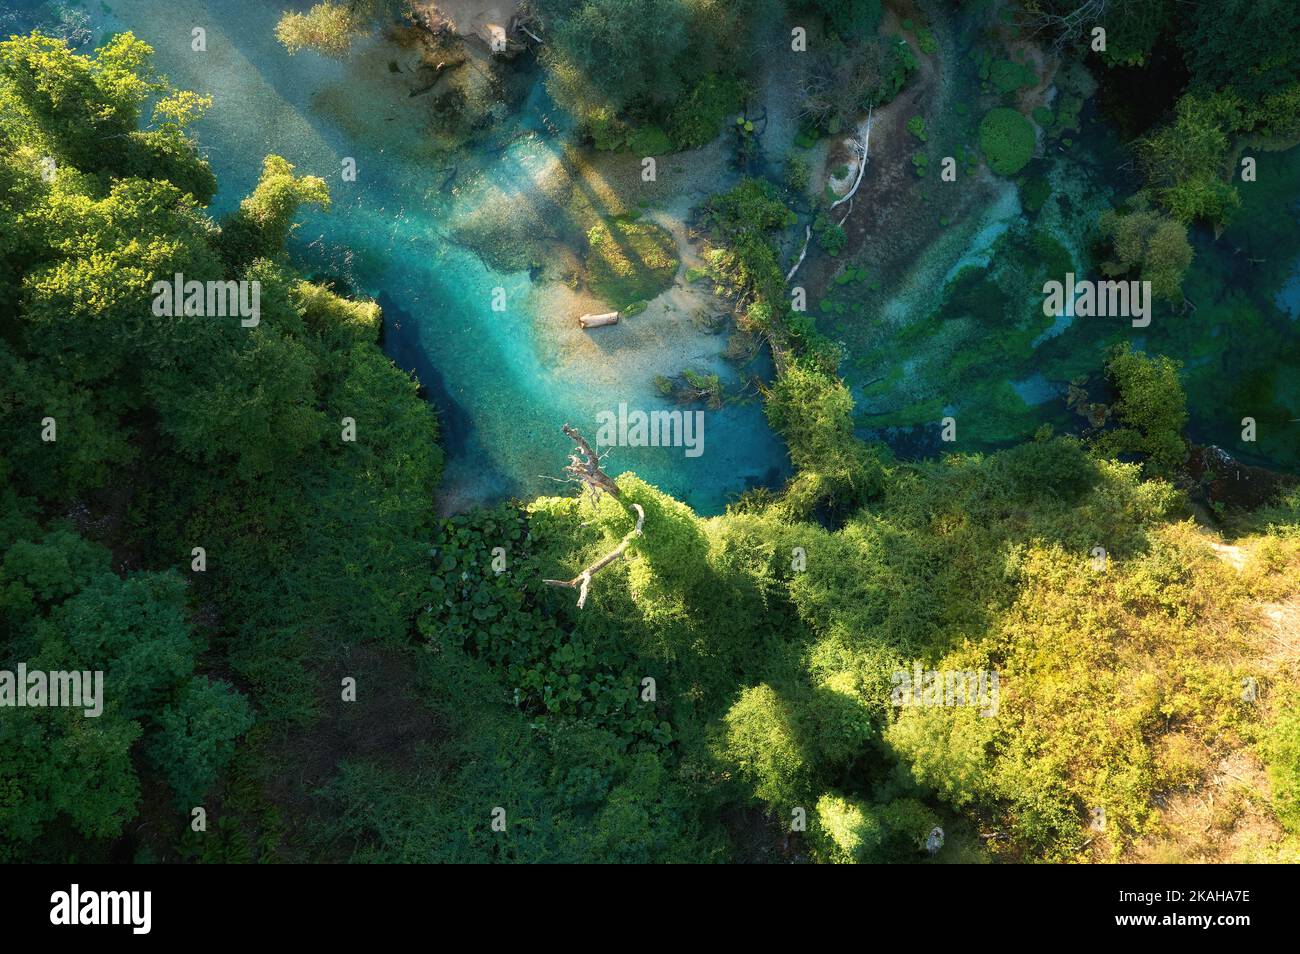 Eau claire, bleu-vert d'un ruisseau de montagne en chêne et sycomore forêt, vue panoramique de la nature pure authentique, vue aérienne, perpendiculaire. Albanie. Banque D'Images